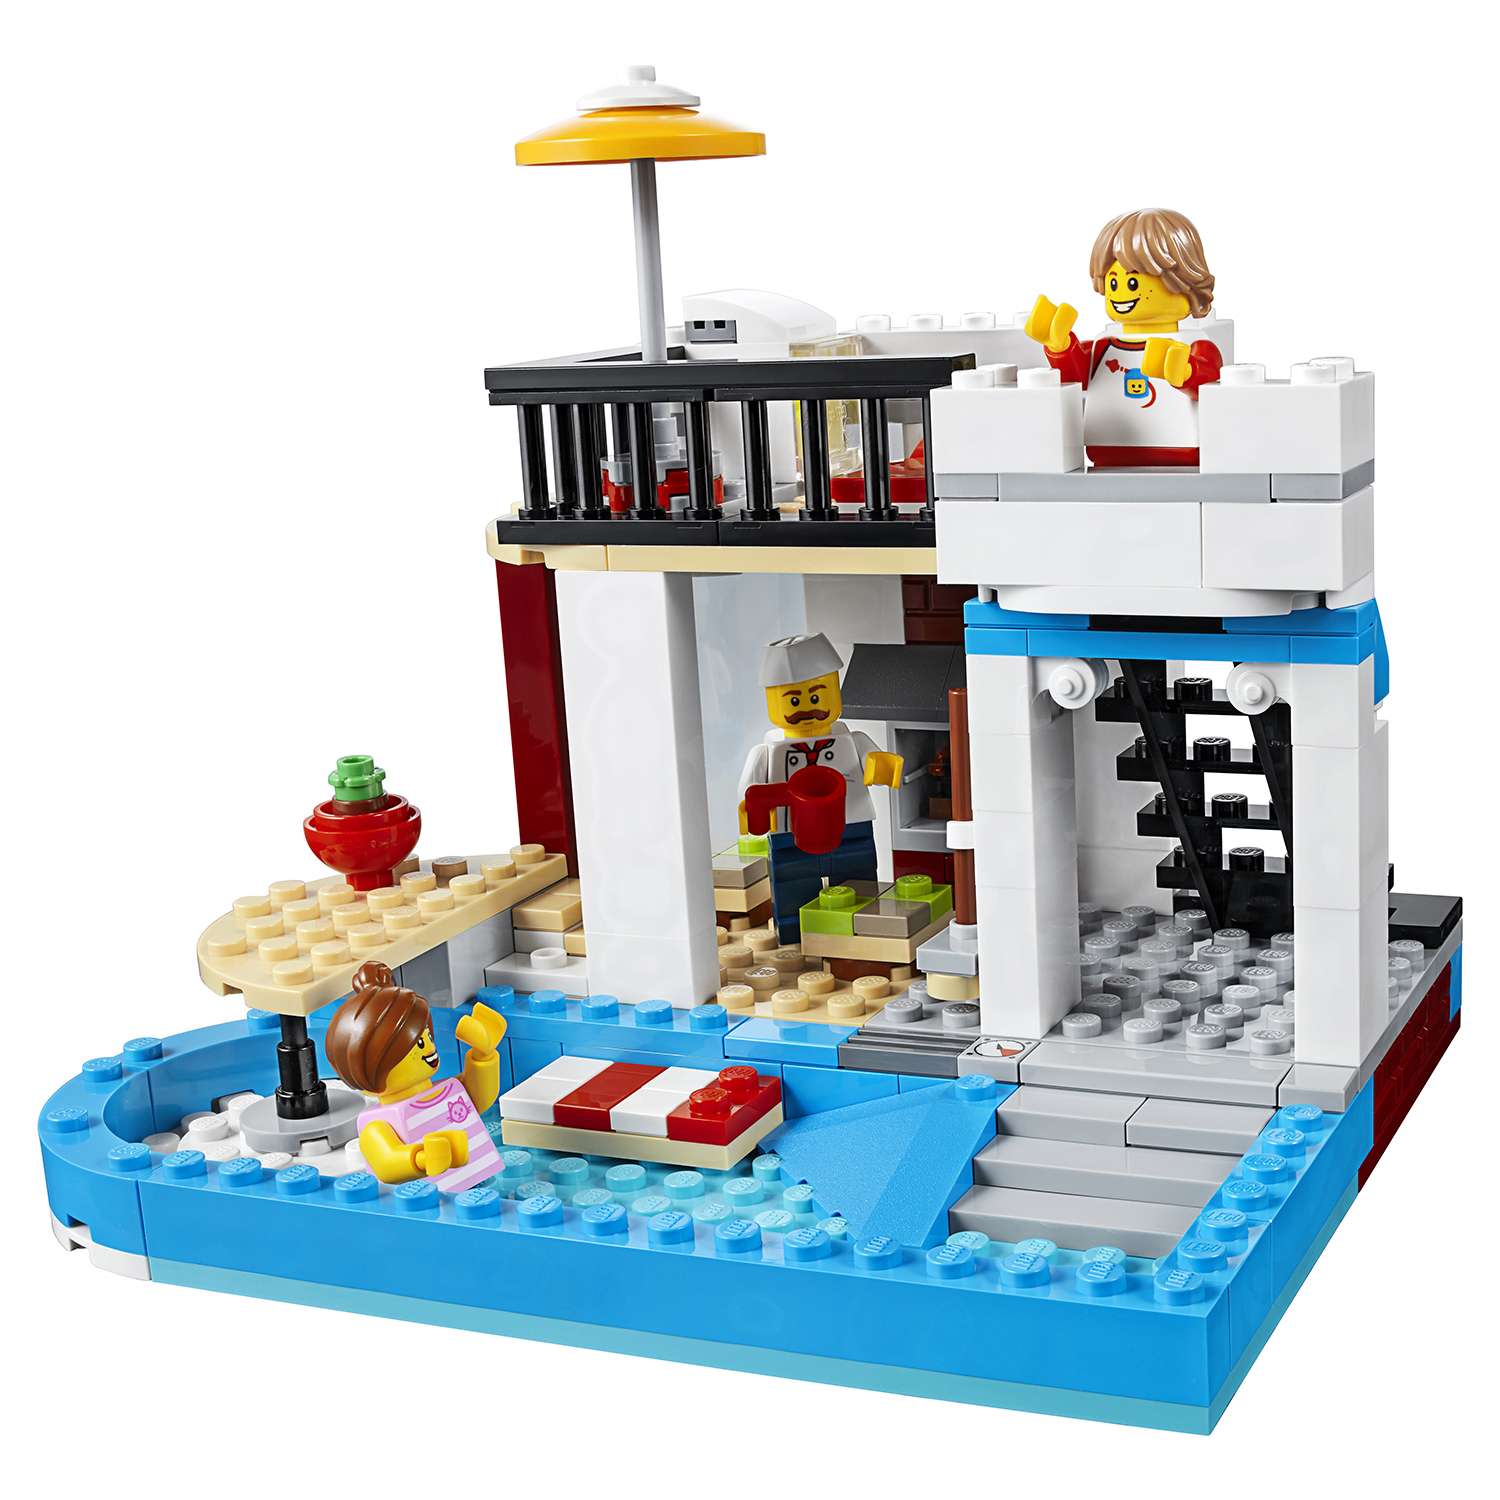 Конструктор LEGO Creator Модульная сборка приятные сюрпризы 31077 - фото 13